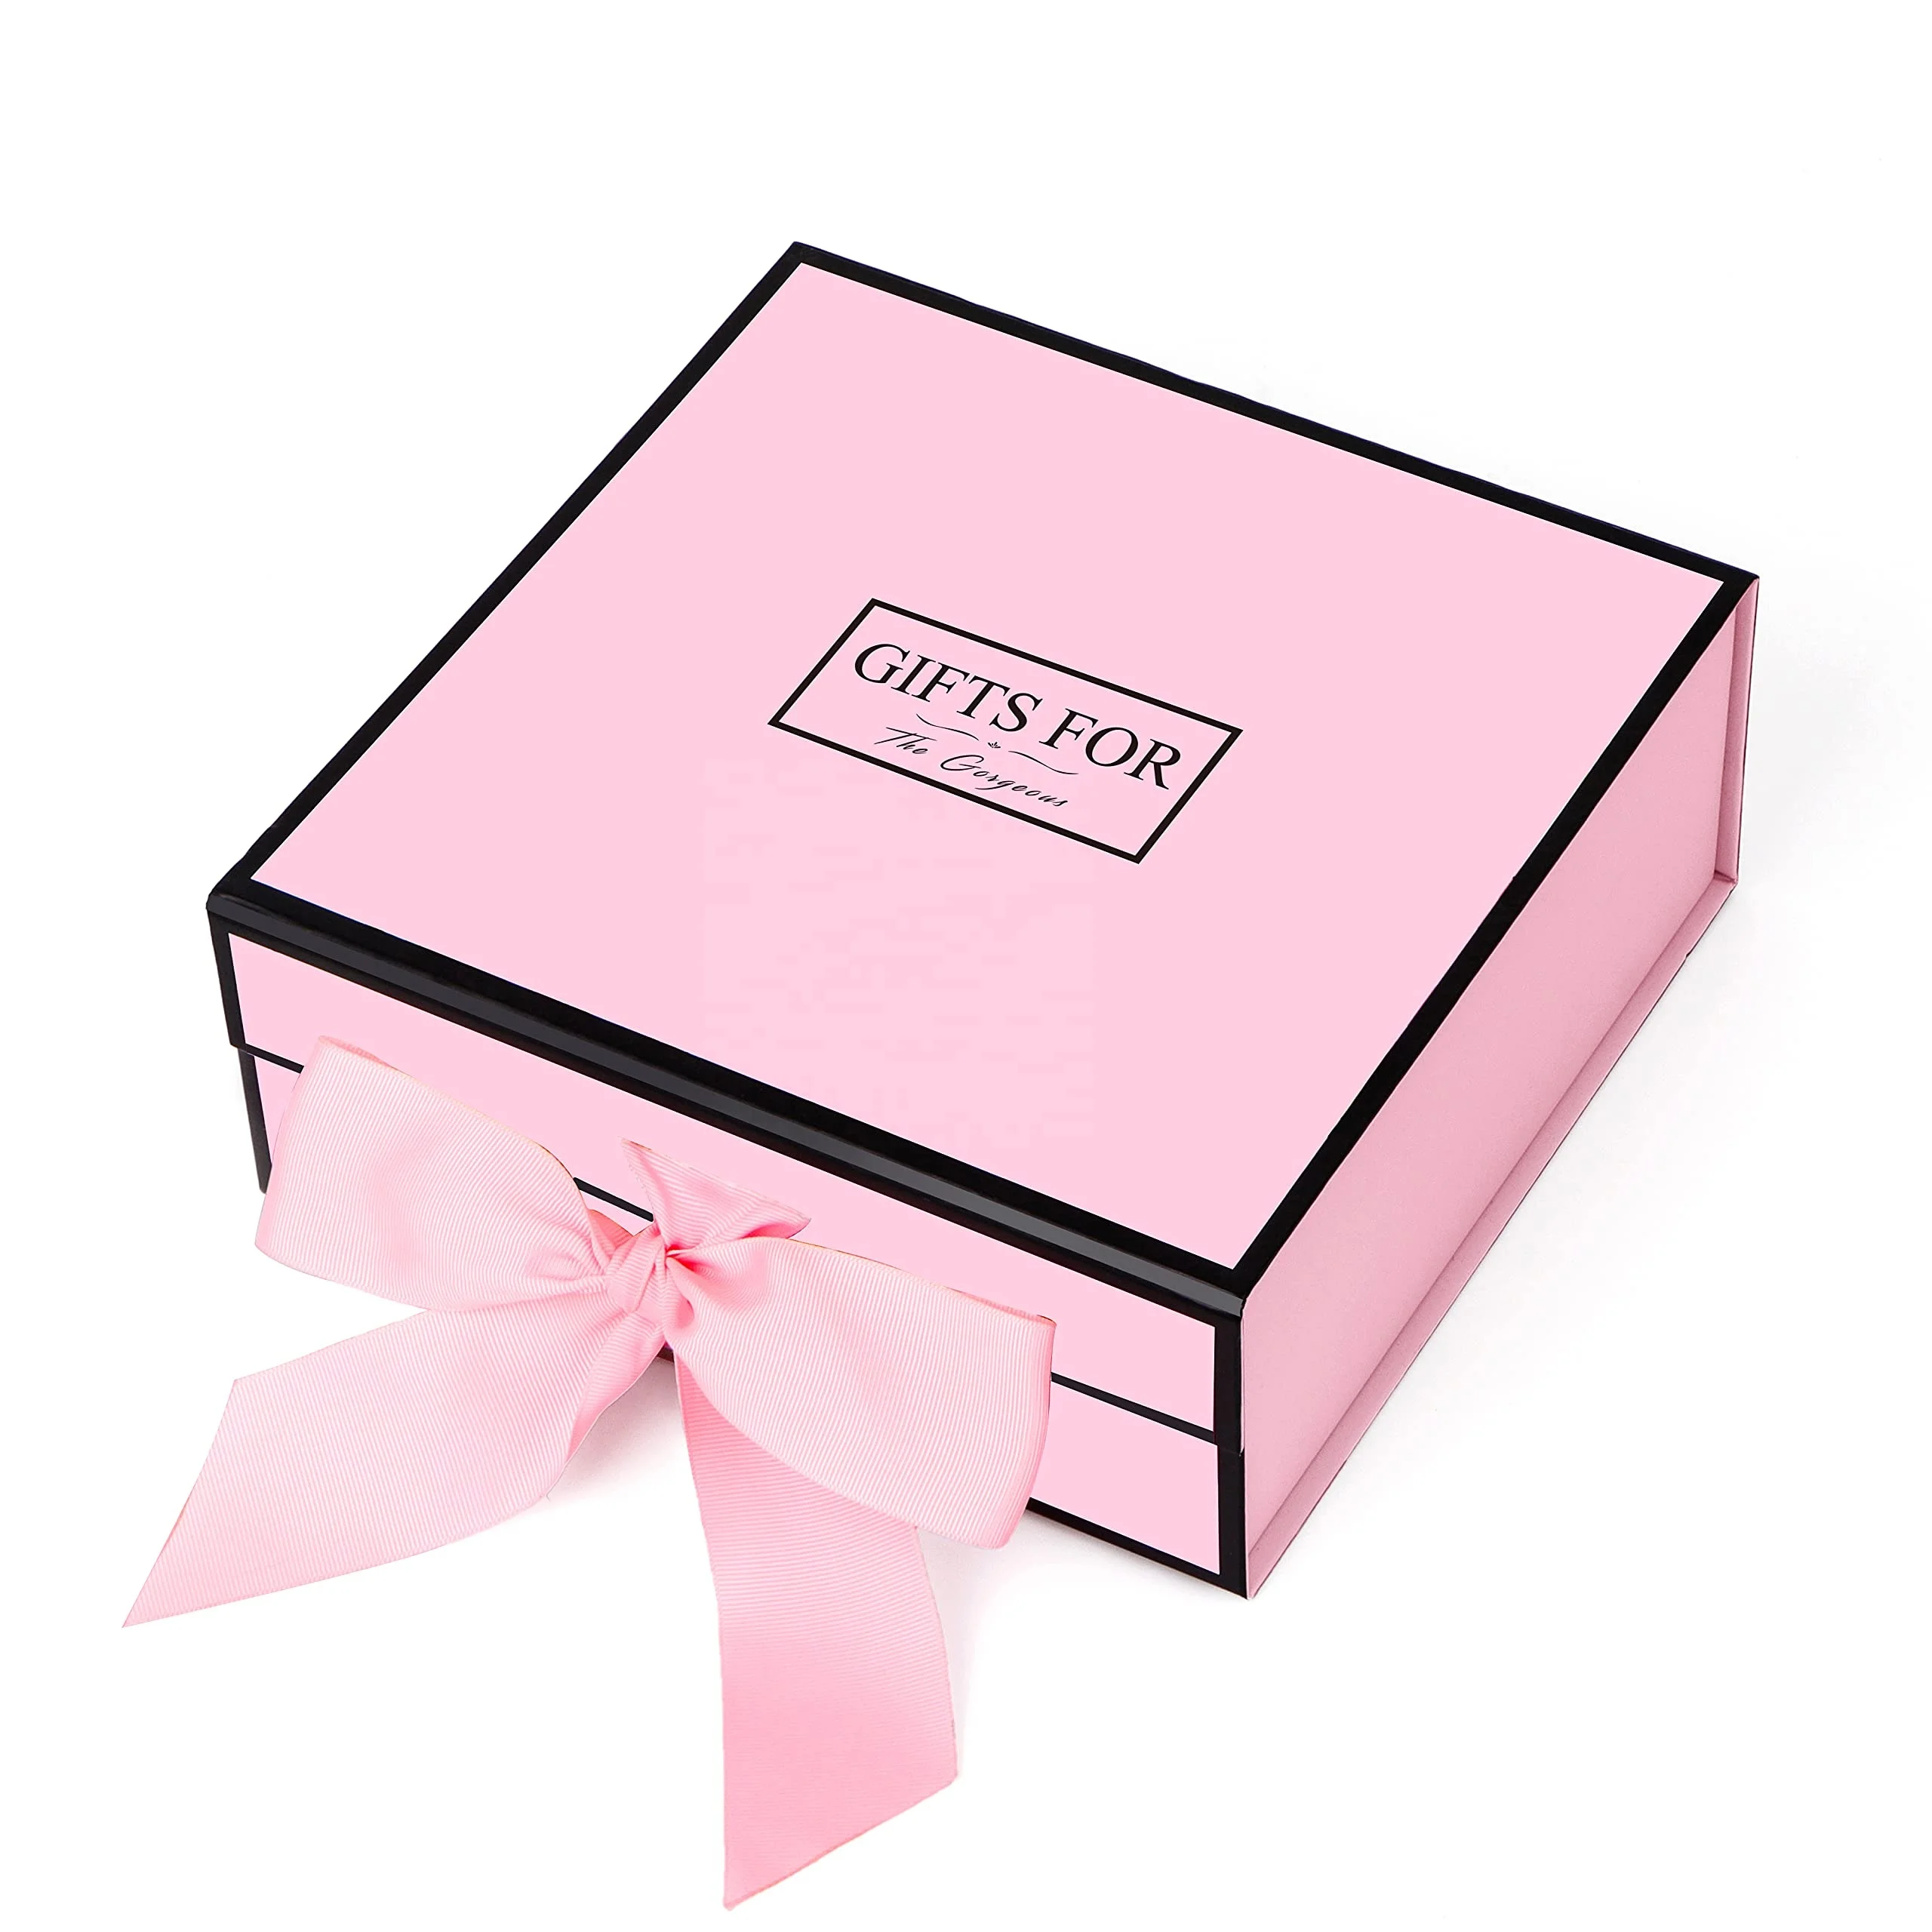 2 colors satin ribbon bridesmaids wedding gifts sets packaging for guests box